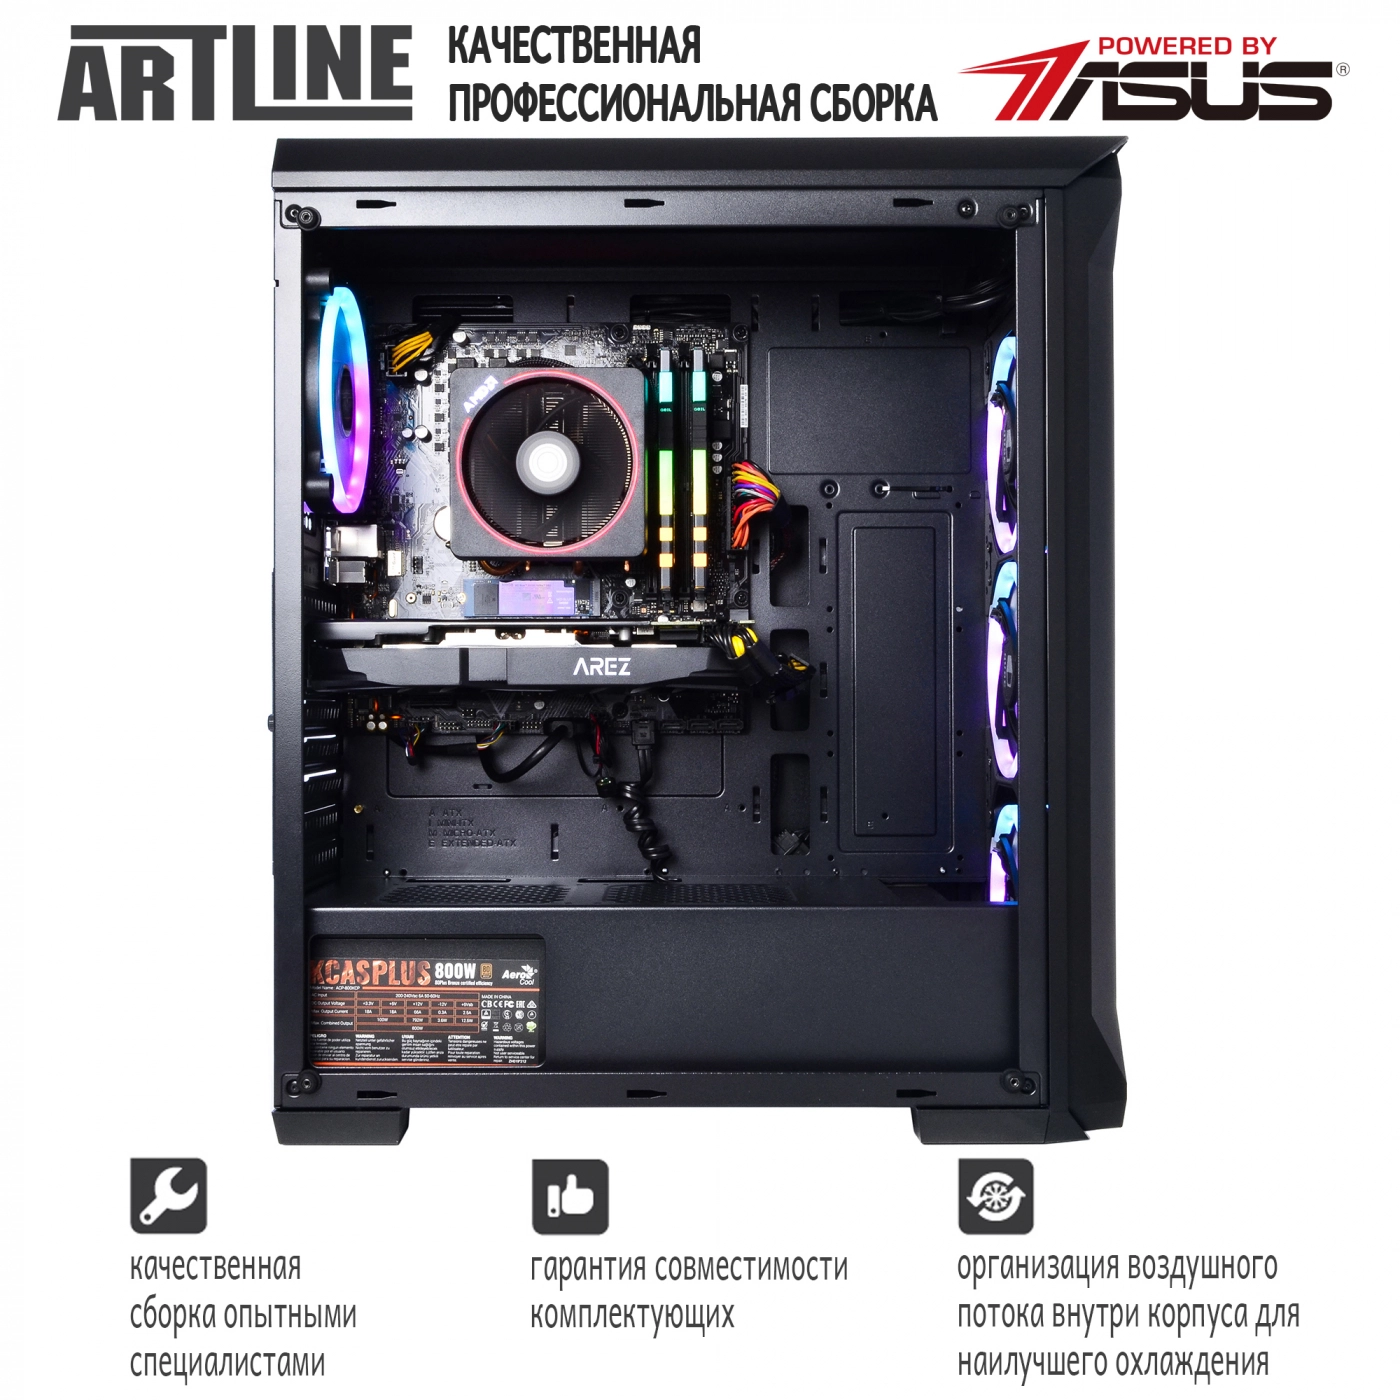 Купить Компьютер ARTLINE Gaming X68v03 - фото 4